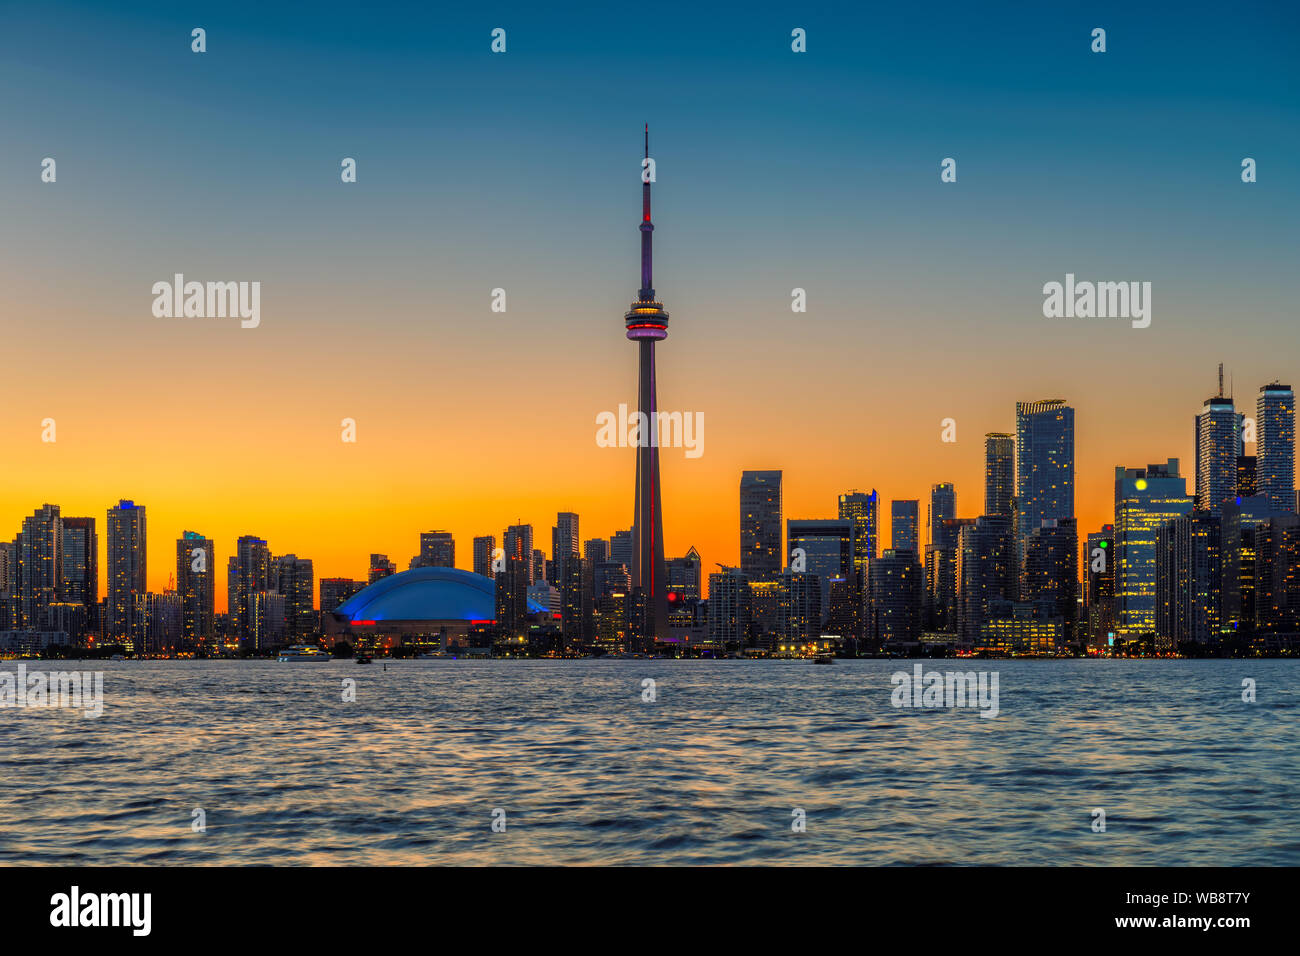 Toronto City skyline at night Stock Photo